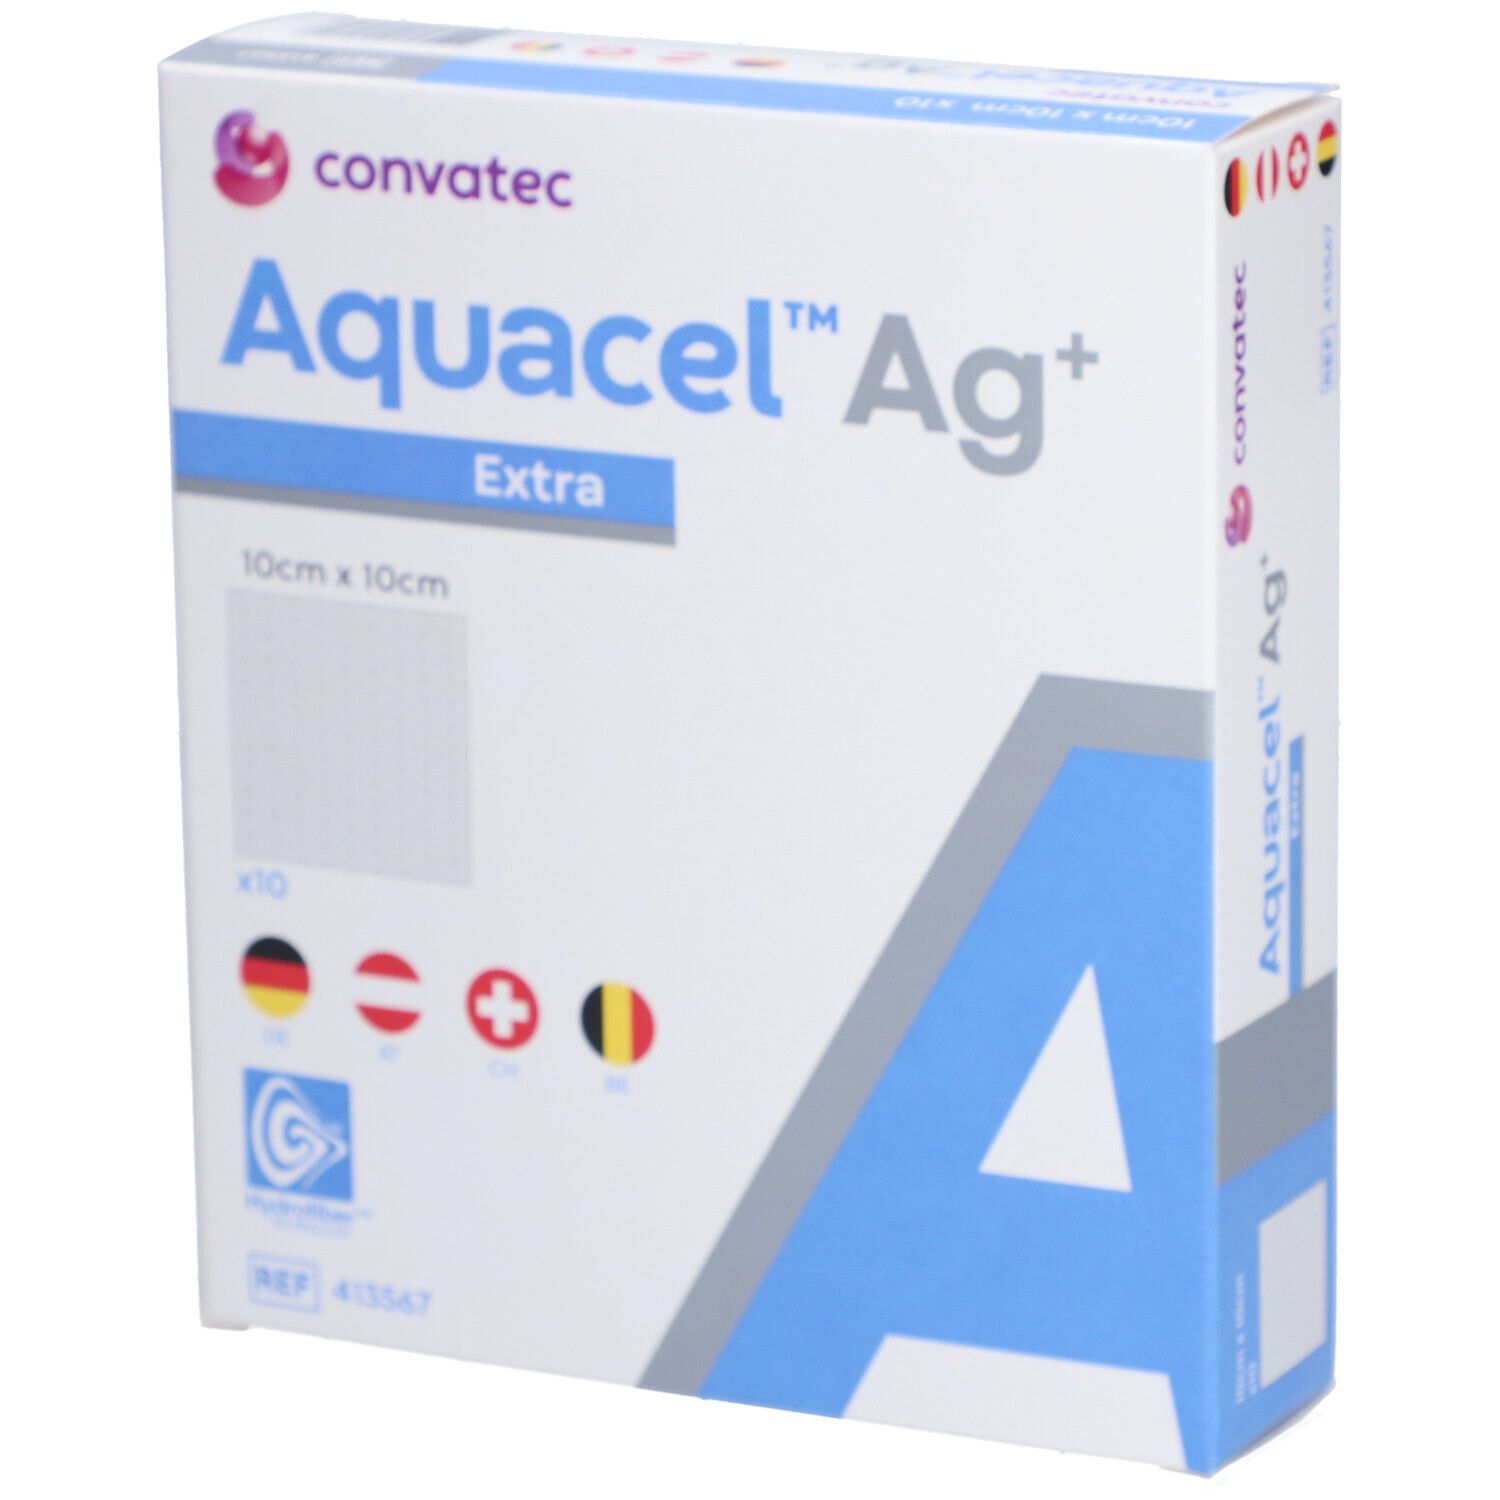 Image of Aquacel™ Ag+ Extra™ Hydrofiber™ Verband 10 x 10 cm